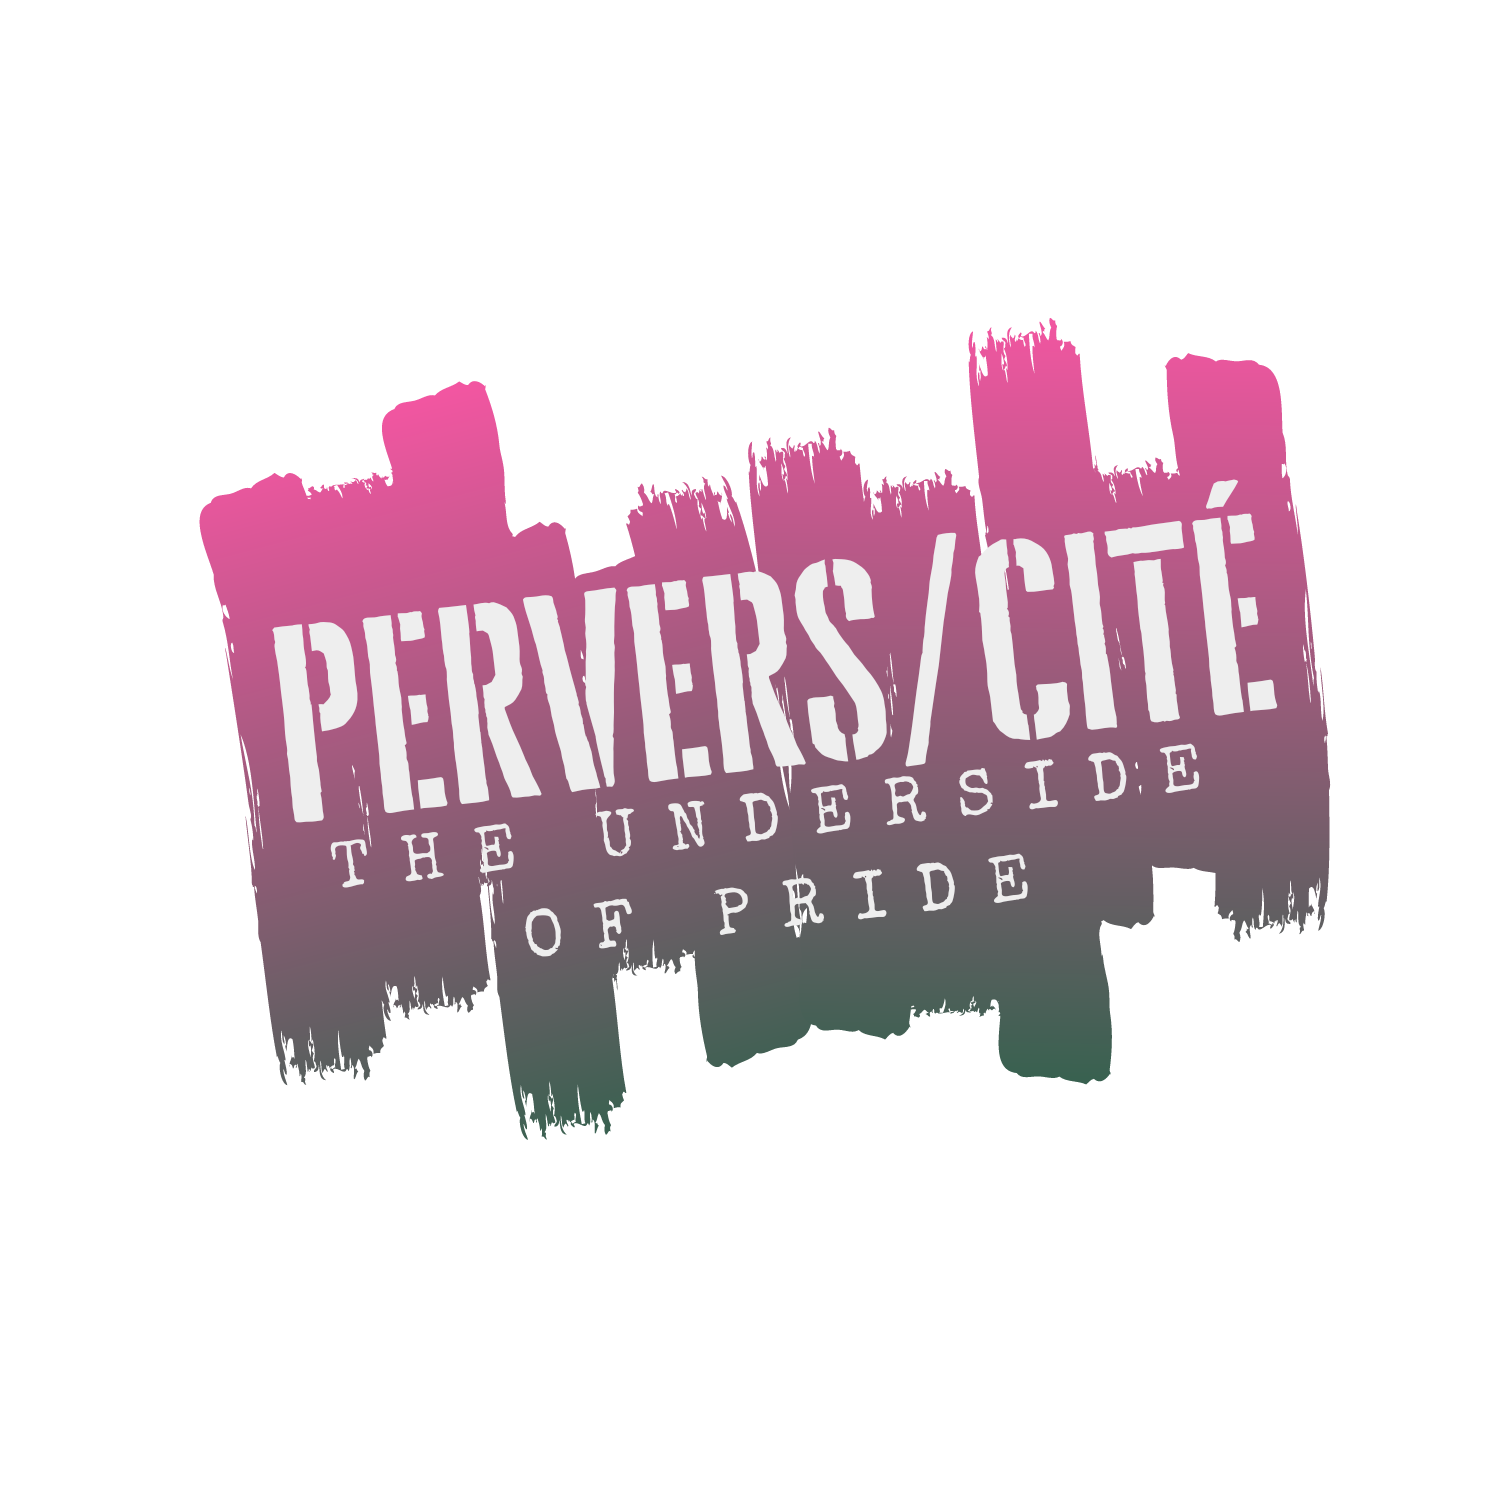 Pervers city